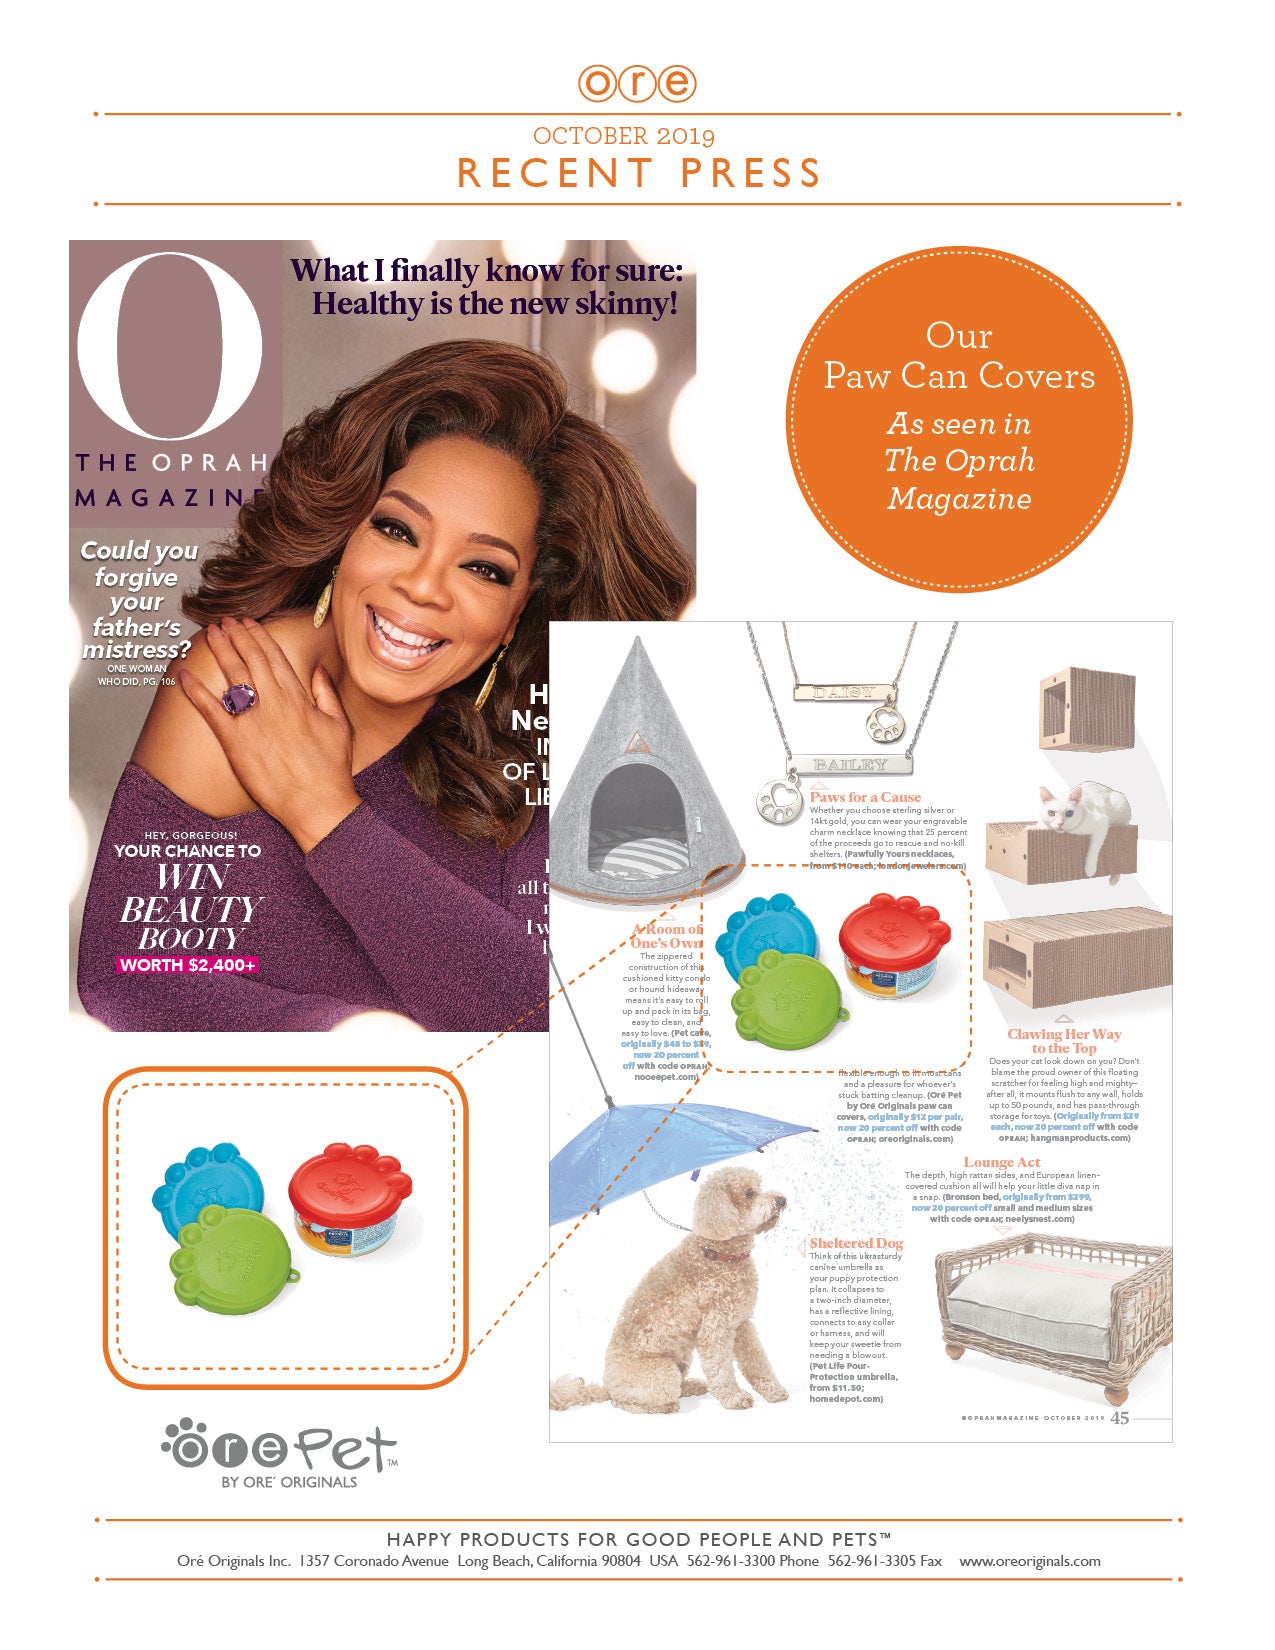 The Oprah Magazine | ORE' Originals Press Release | October 2019